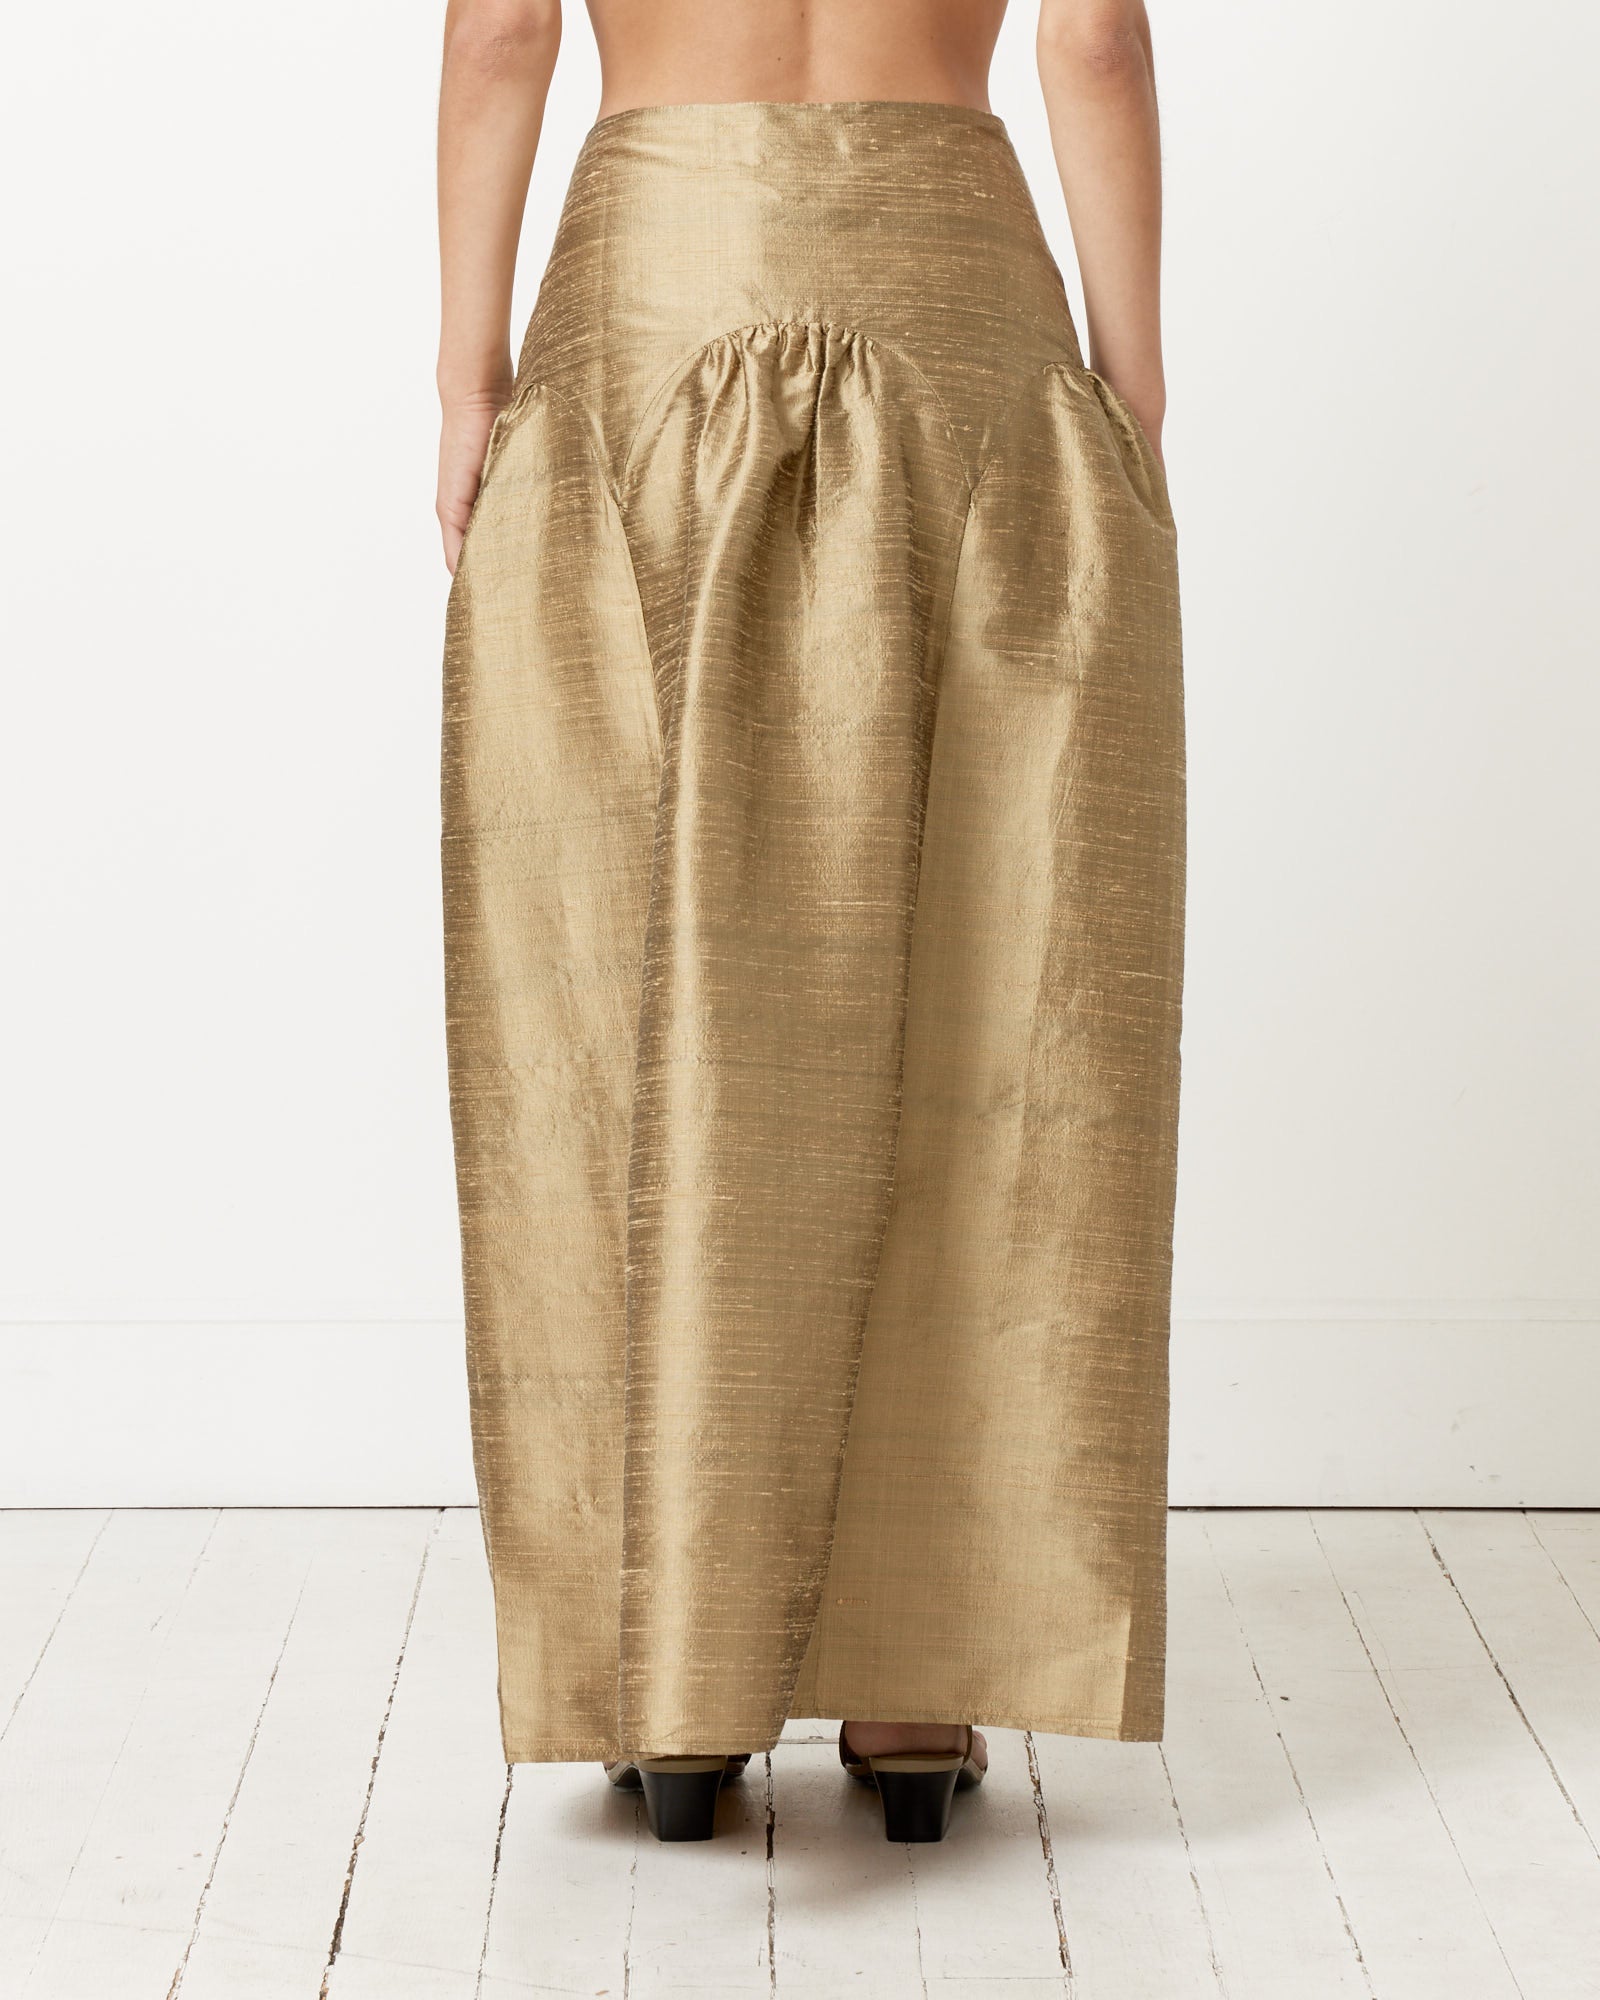 Pallon Skirt in Gold